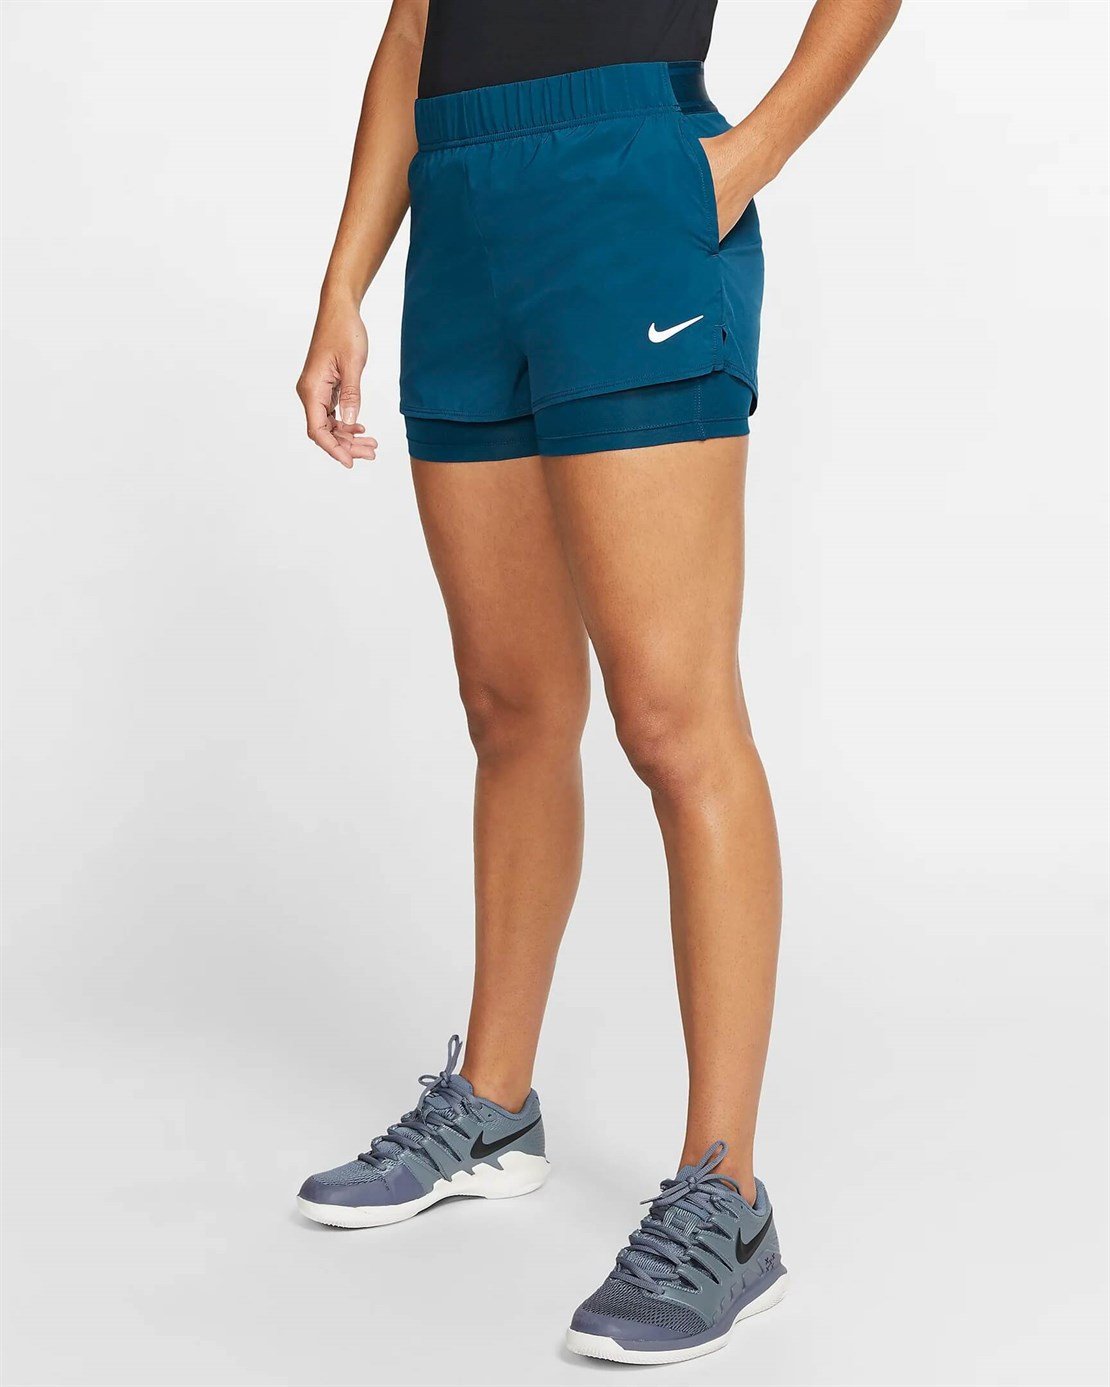 Nike Flex Kadın Tenis Şortu | Merit Spor